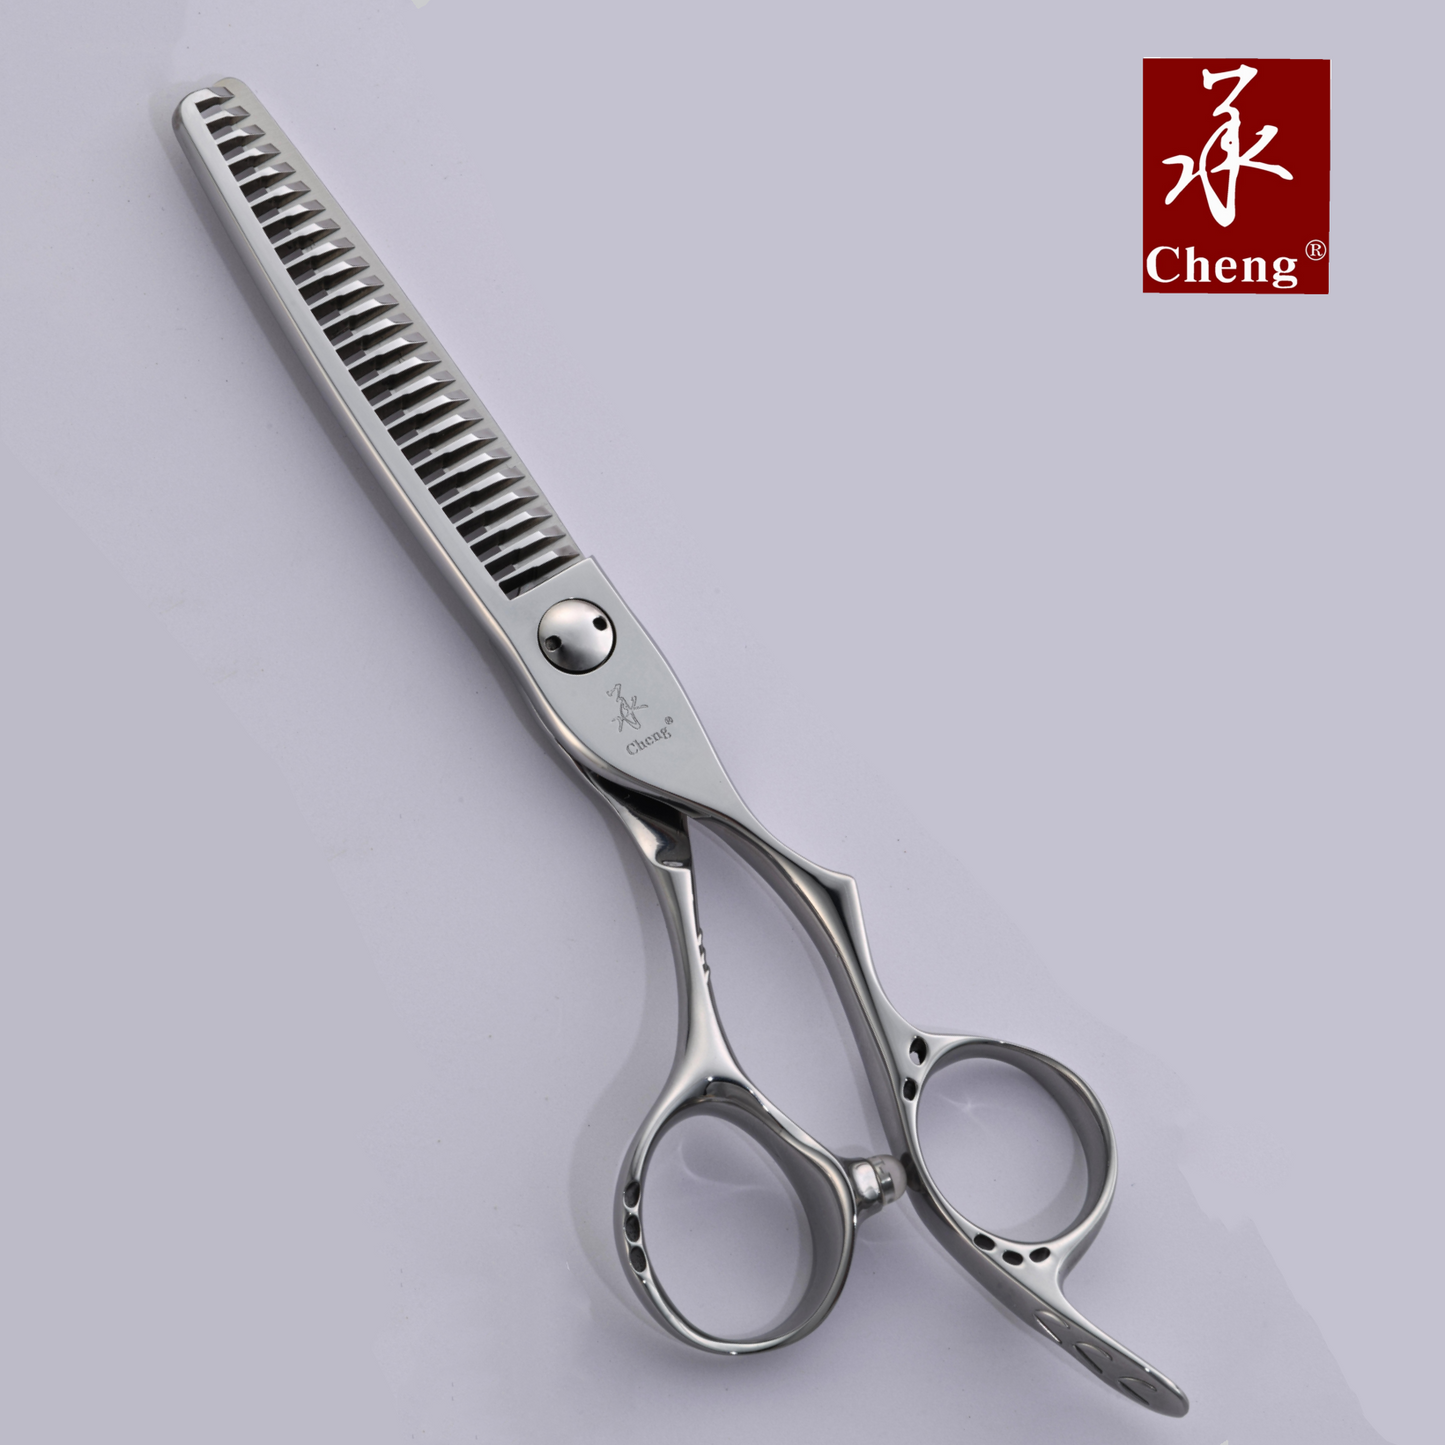 A4-6.5TH Hair Cutting Scissors 6.5 Inch